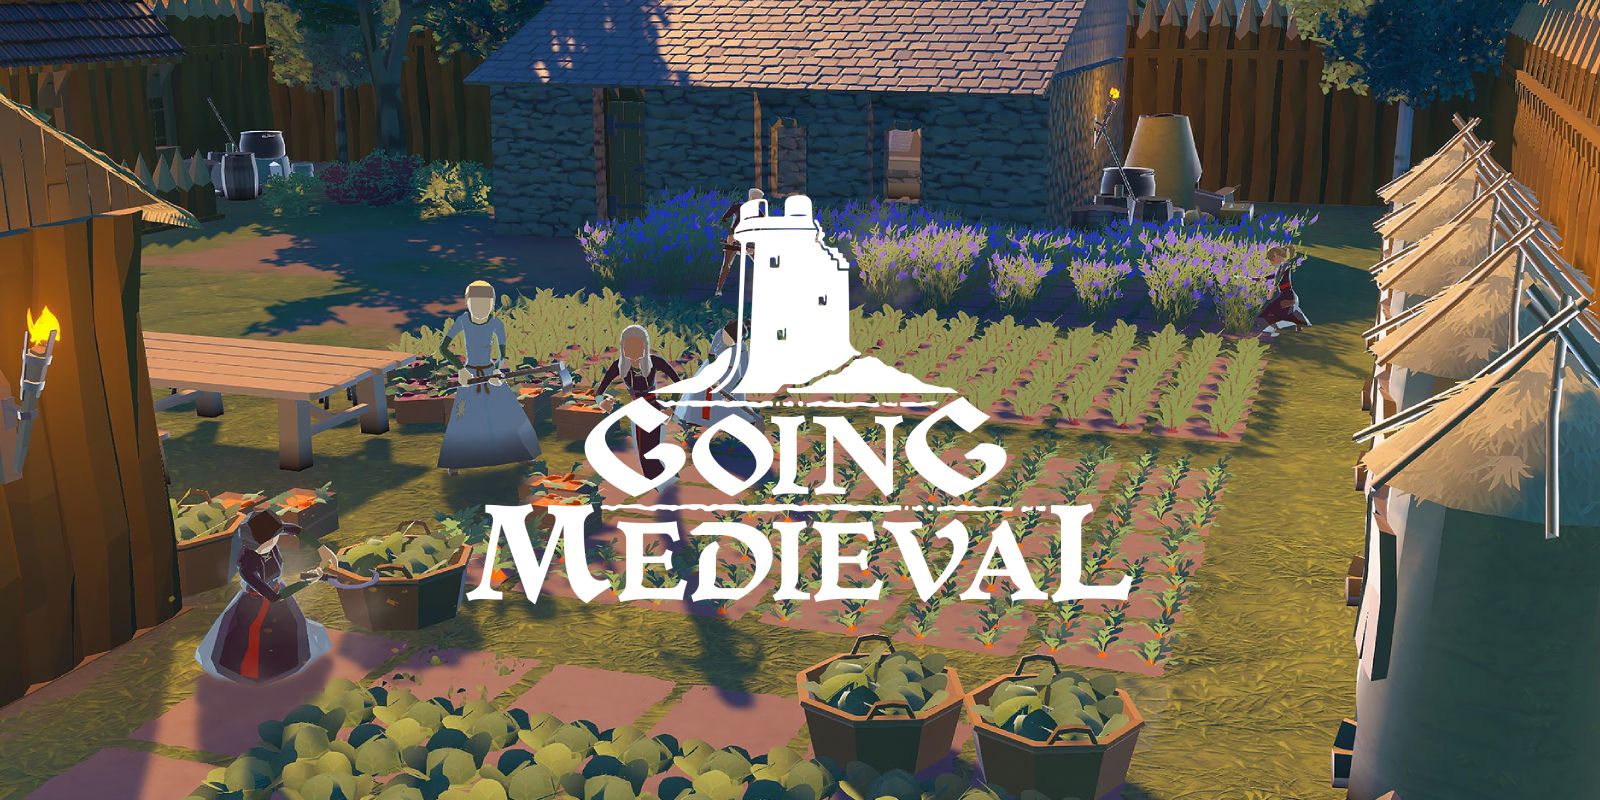 Se está volviendo medieval, un juego de estrategia en tiempo real, un juego agrícola o un constructor de ciudades